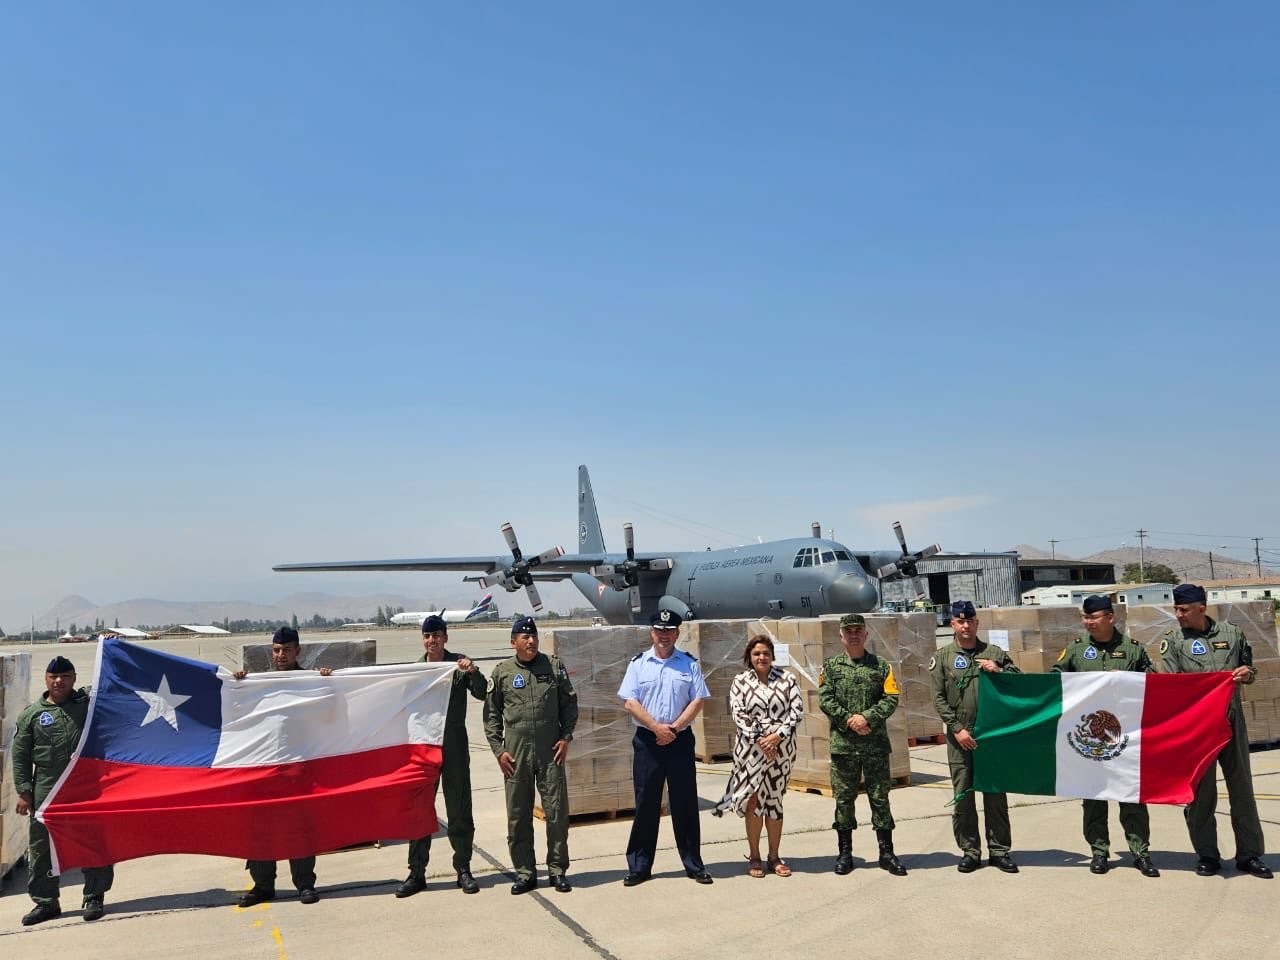 La foto de la llegada de los dos aviones pertenecientes a la Sedena fue compartida por Alicia Bárcena. Fuente: X (antes Twitter)/aliciabarcena